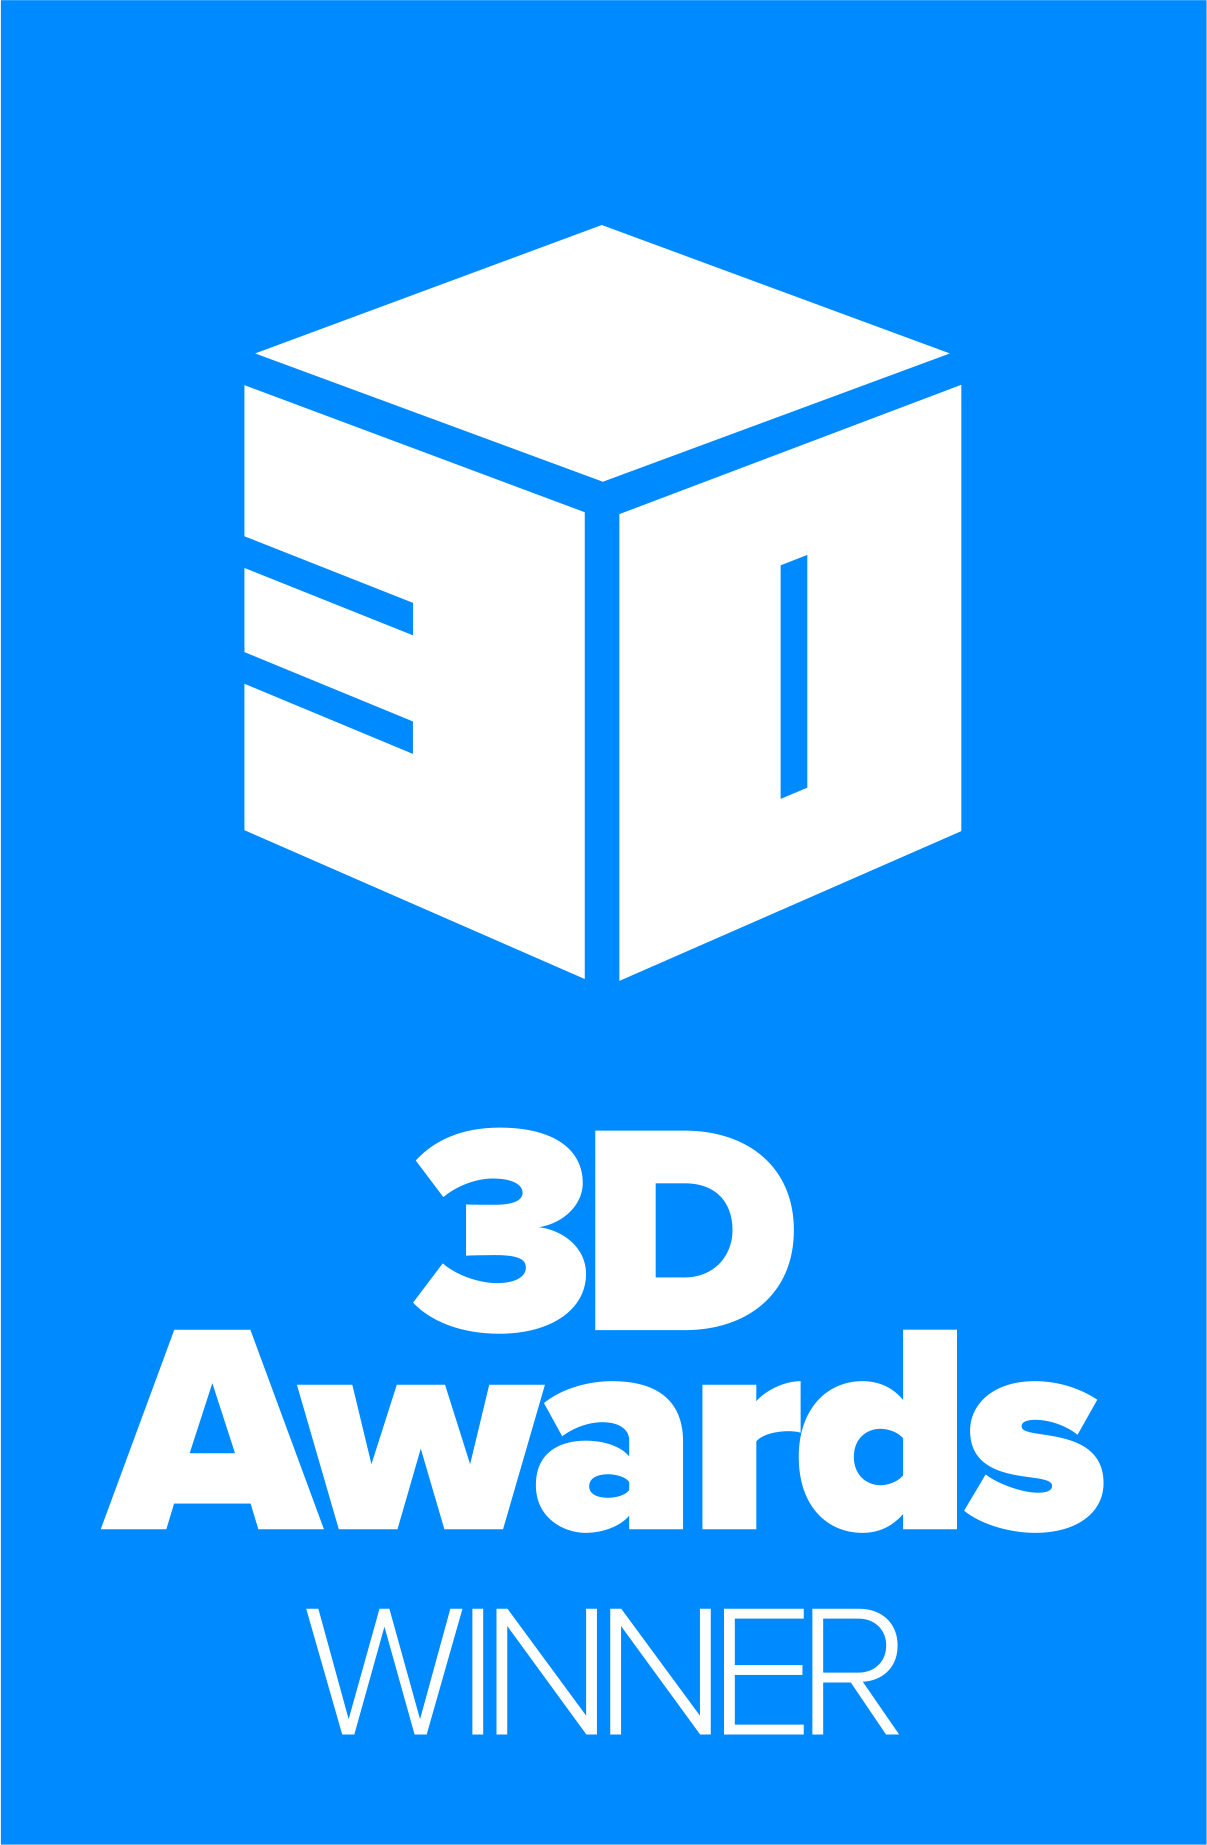 3D Awards Winner